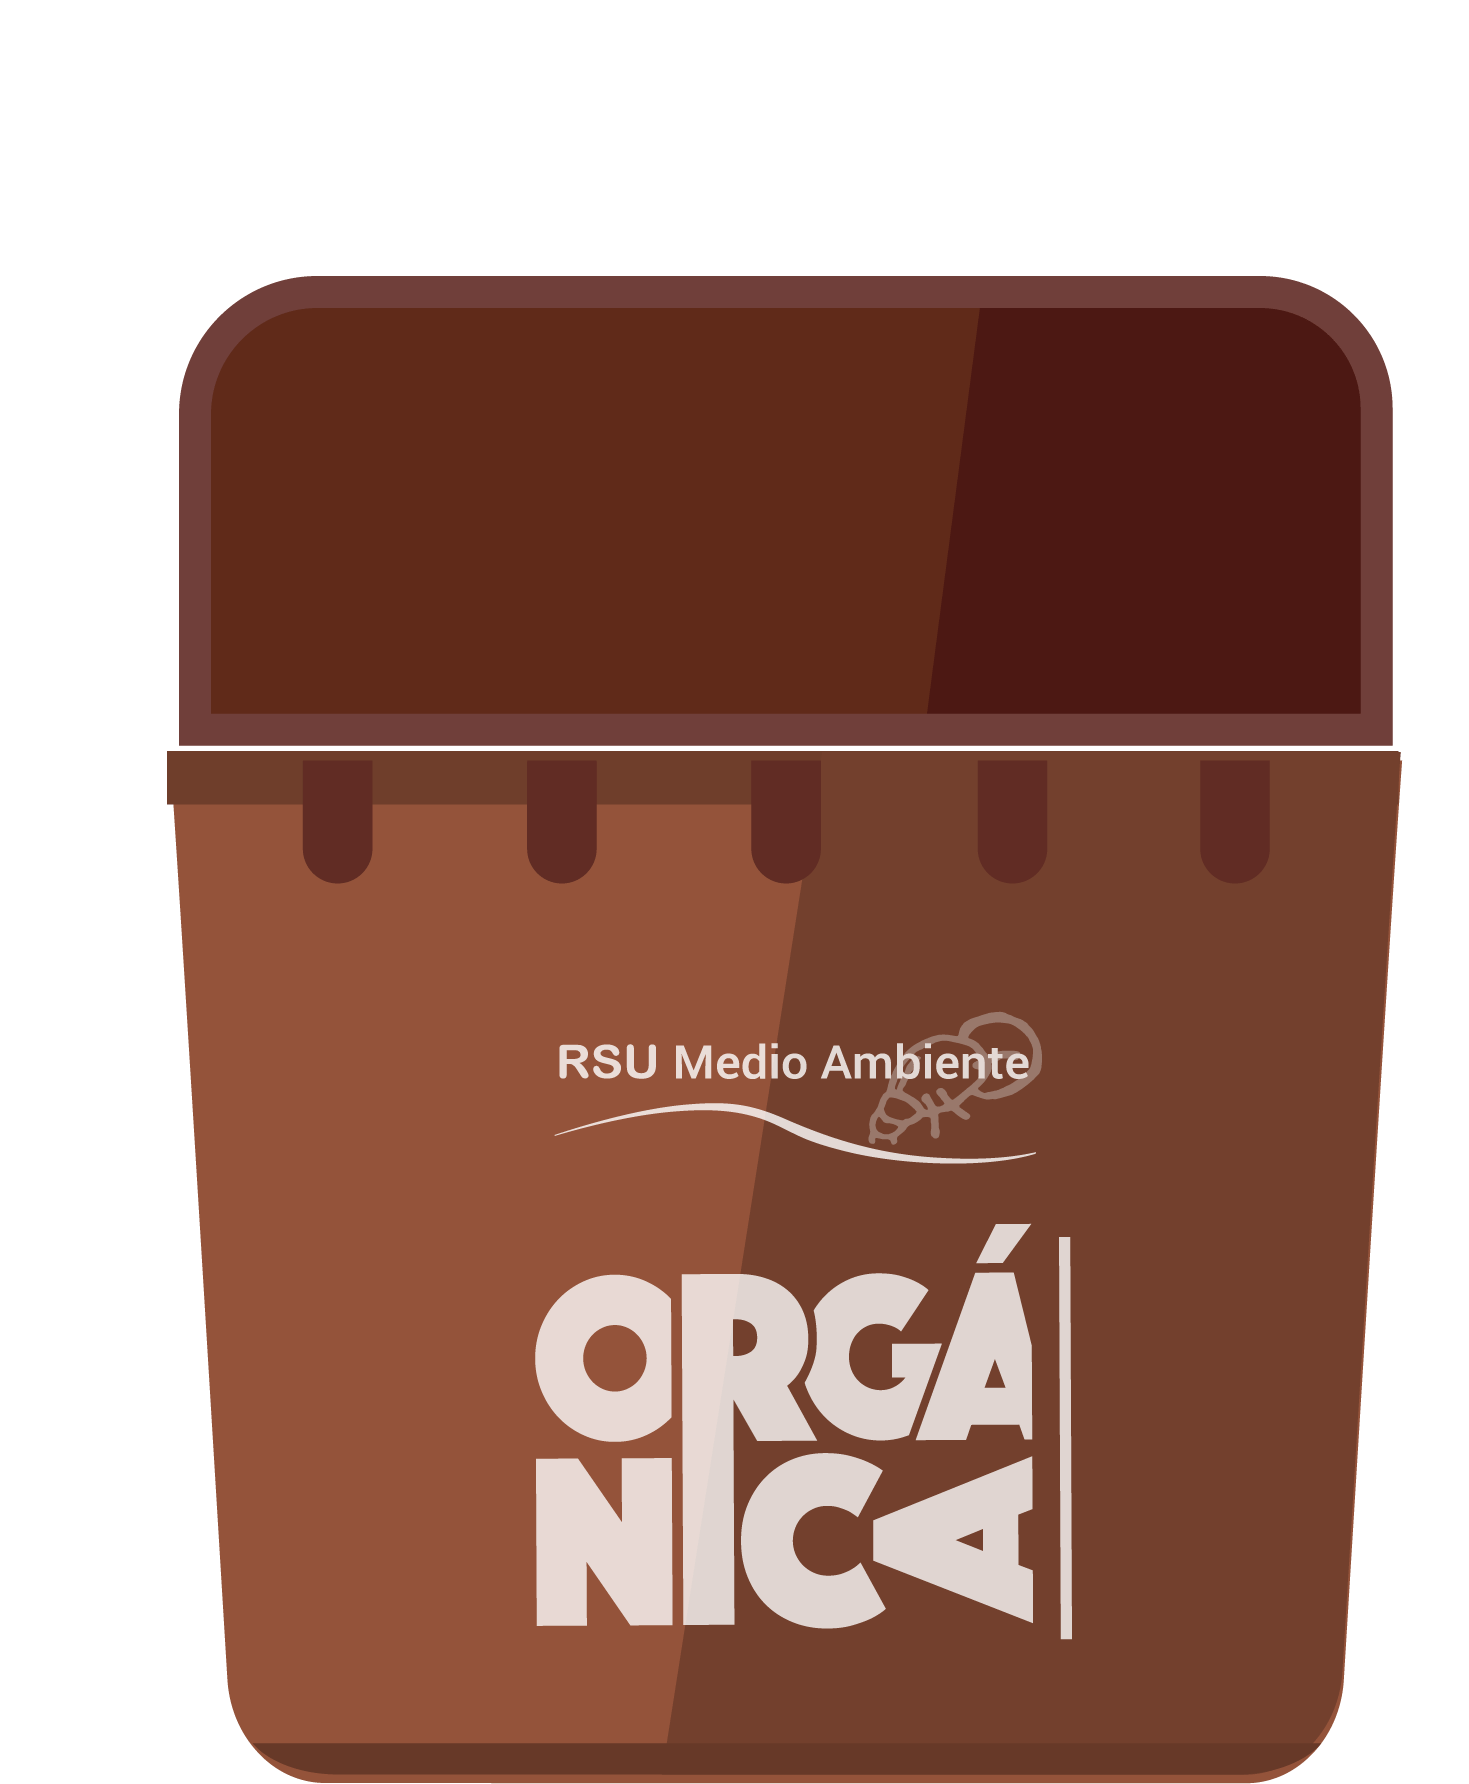 Separar lo orgánico